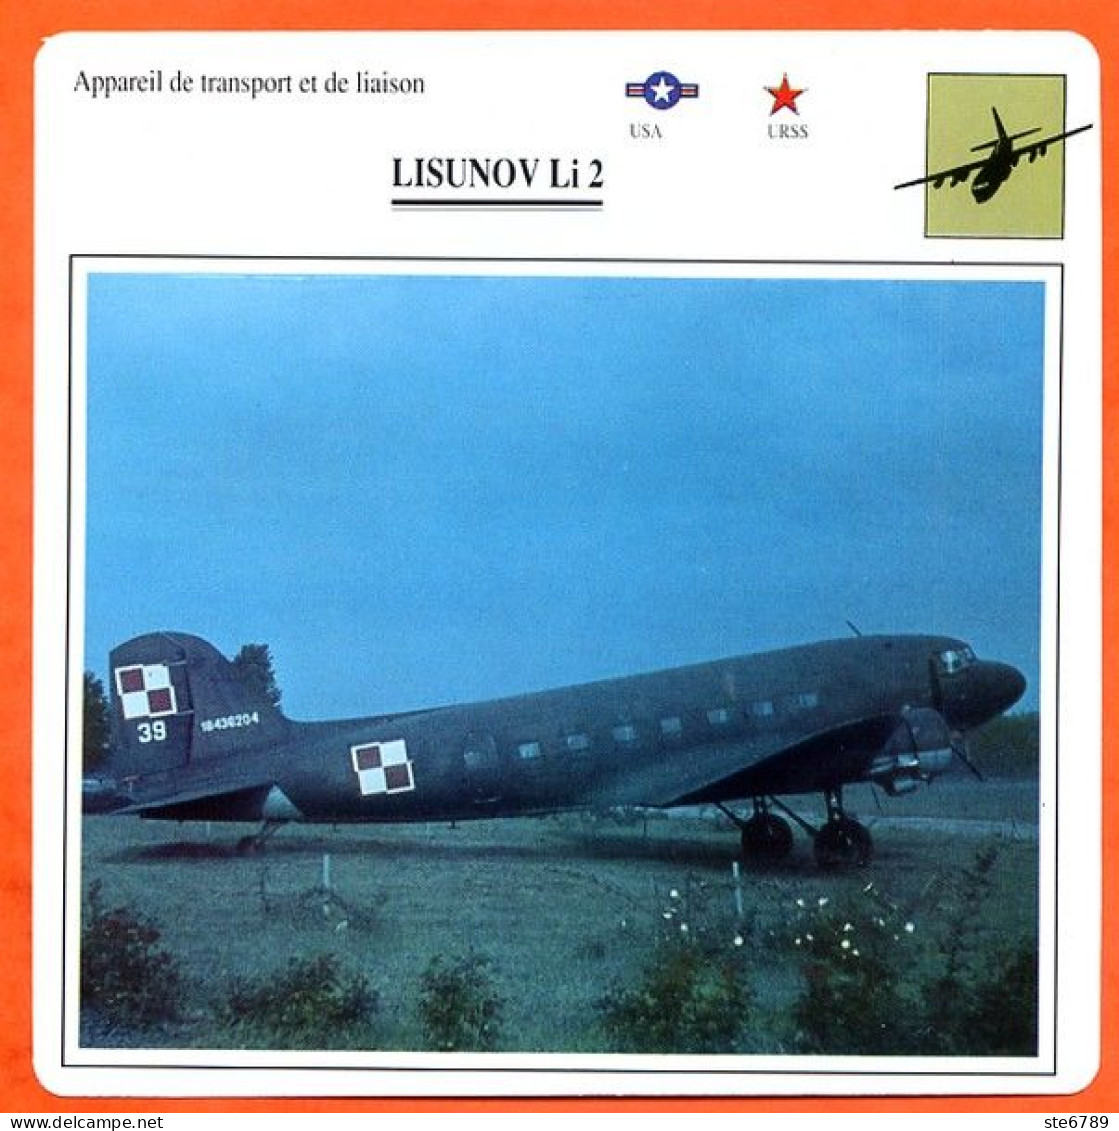 Fiche Aviation LISUNOV Li 2 / Avion Transport Et Liaison USA URSS Avions - Avions